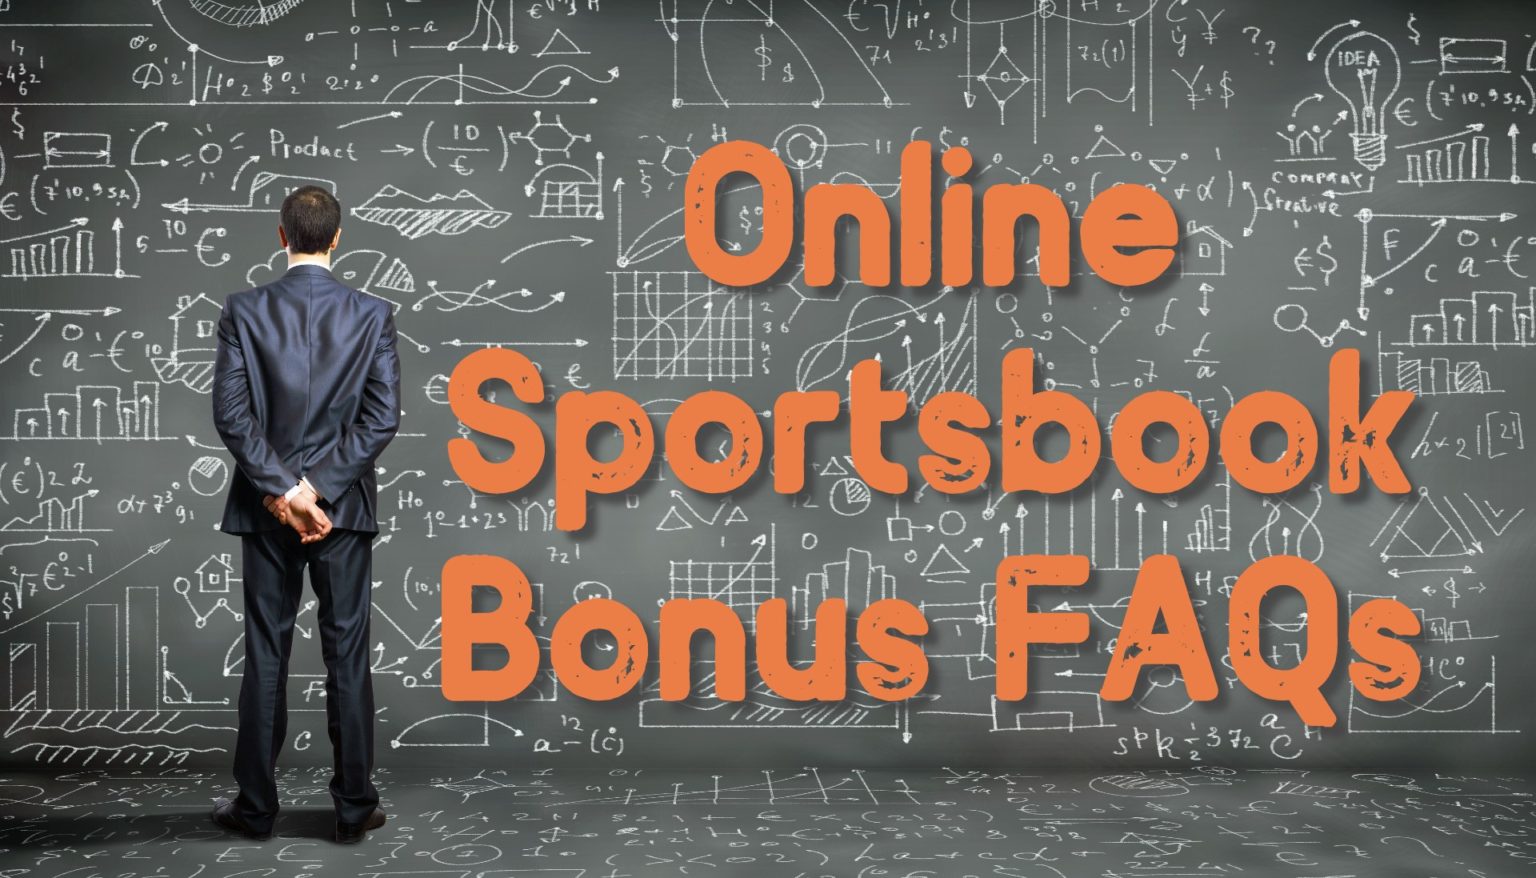 Online-Sportsbook-Bonus-FAQs-1536x878.jpg